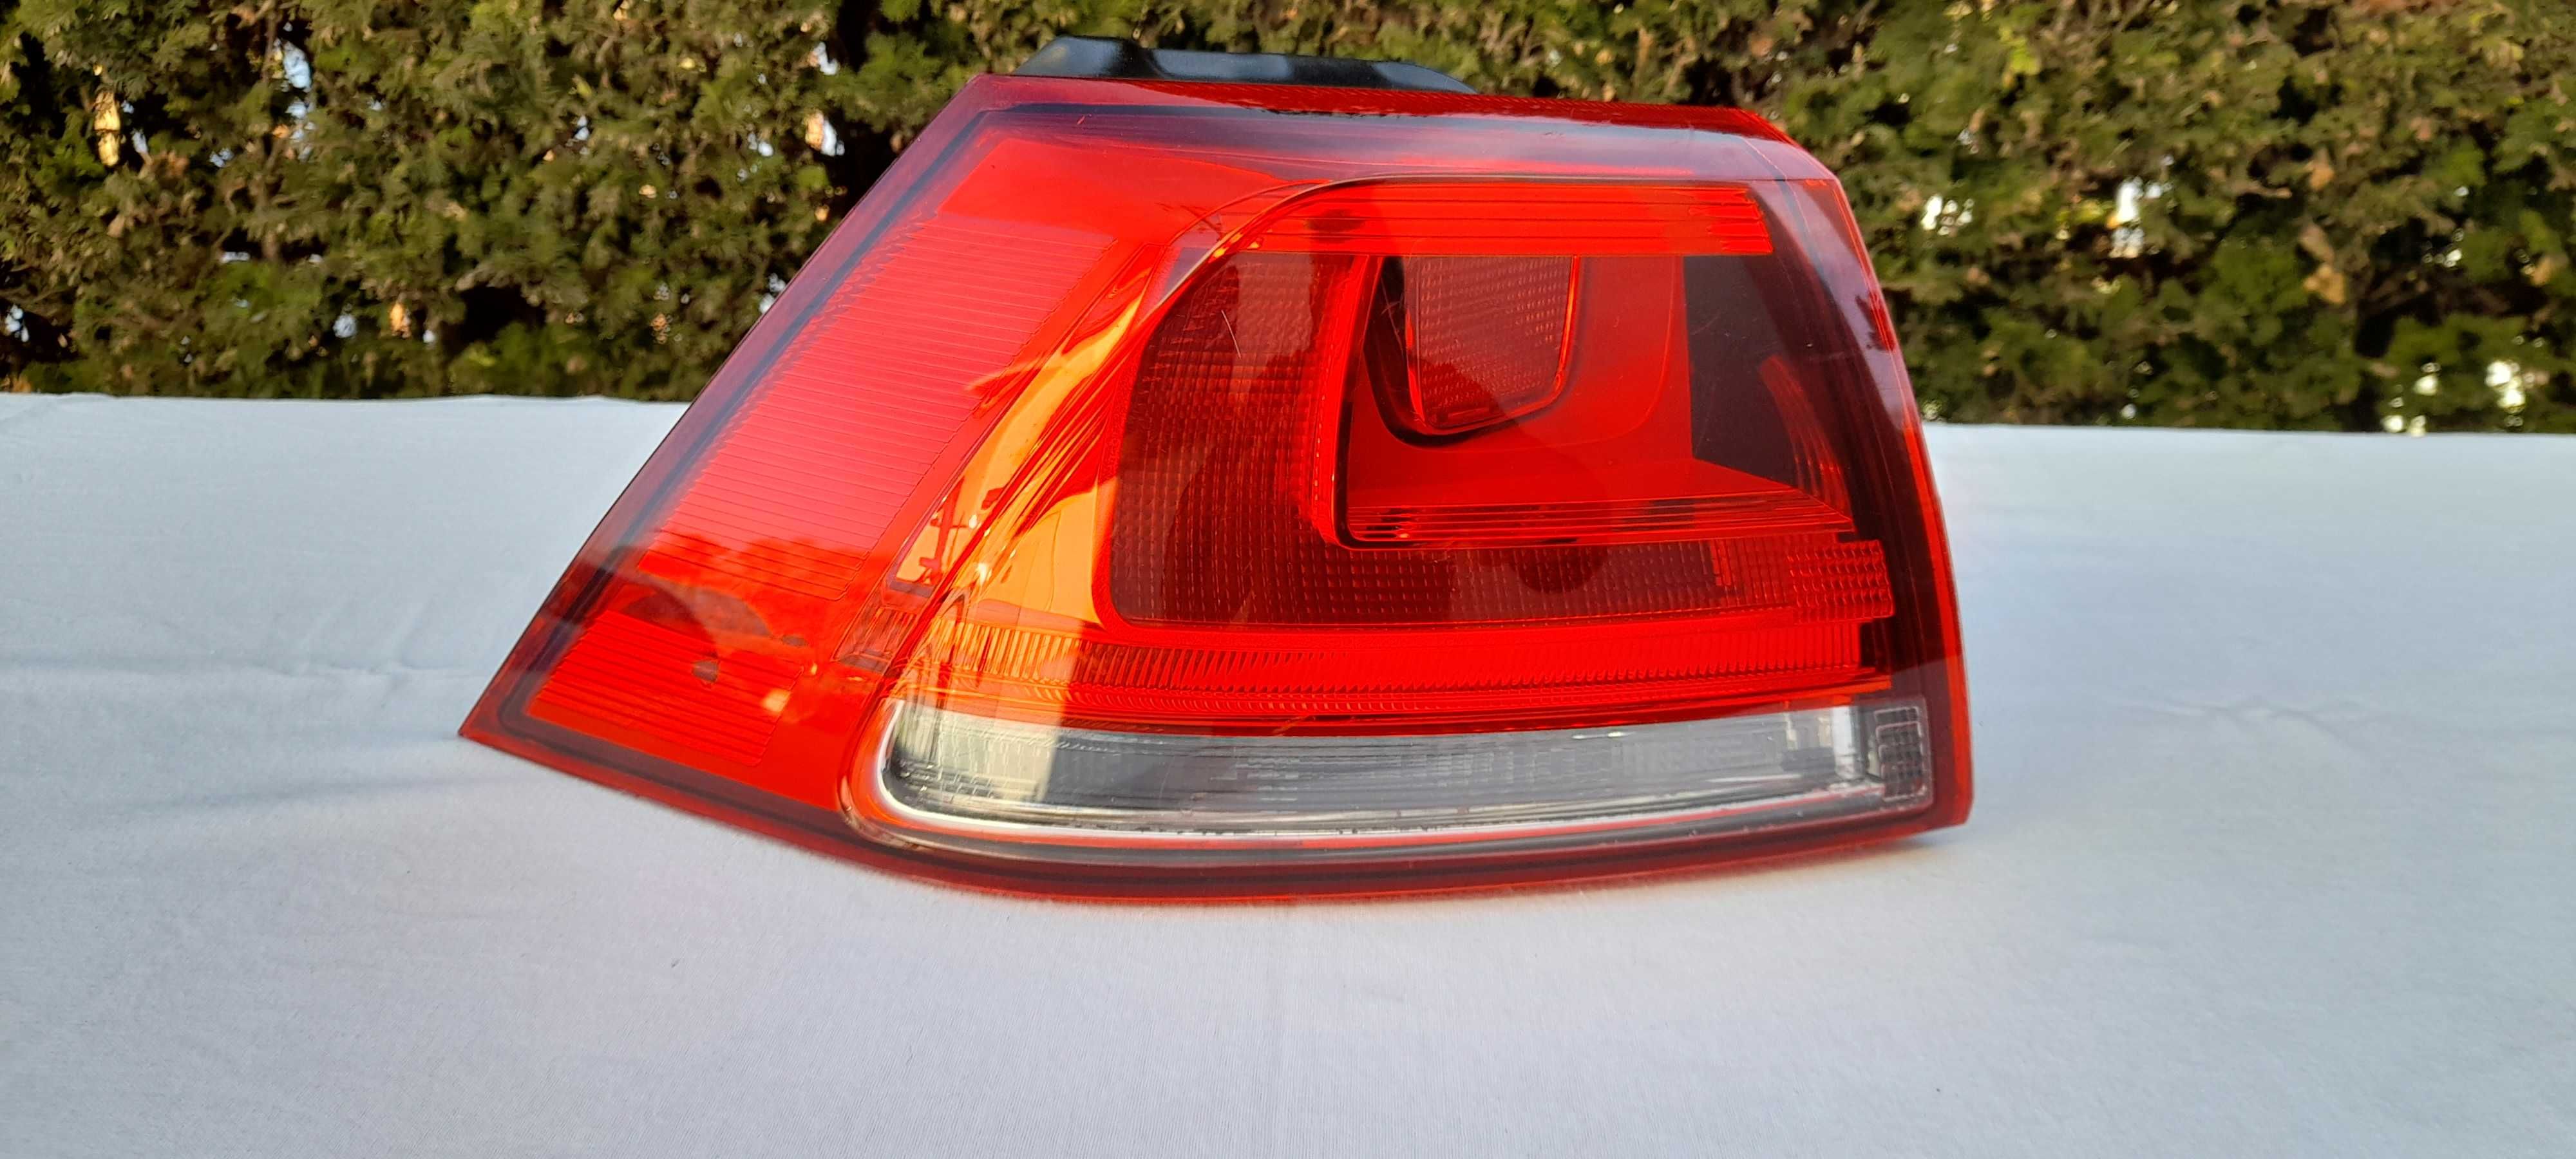 Lampa VW  lewy - tył  VW Golf  VII   5G0